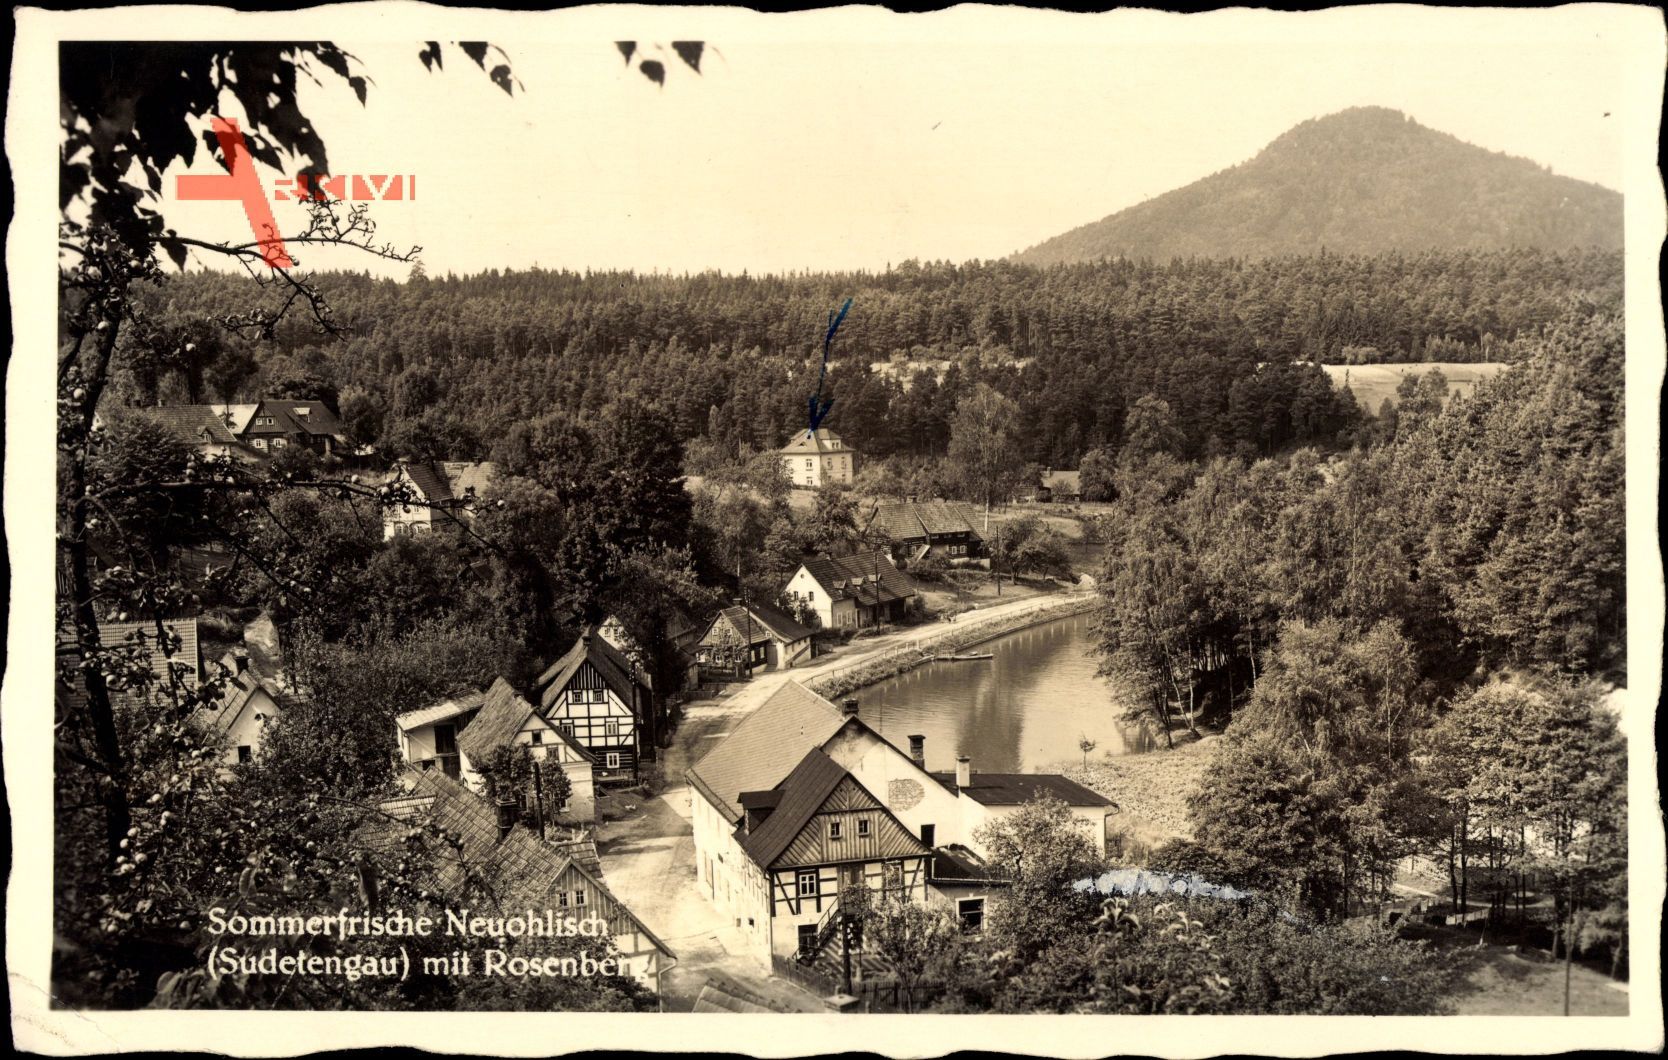 Neuohlisch Sudetengau Reg. Aussig, Blick auf den Ort mit dem Rosenberg